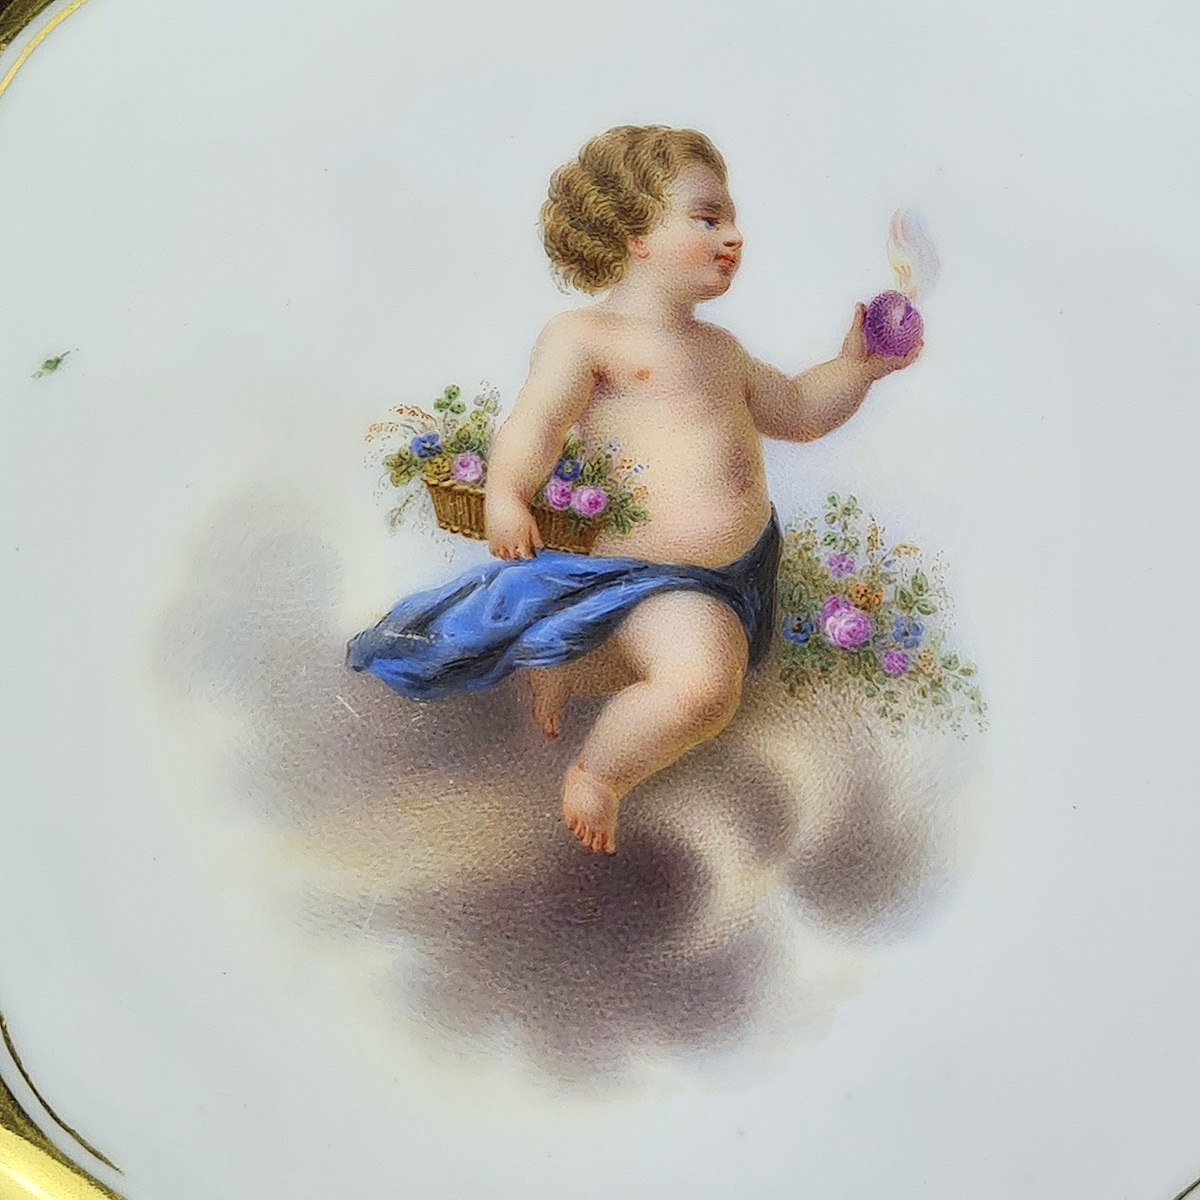 Тарелка с путти и цветами из фарфора 19 век (ИФЗ период А II, Российская Империя)